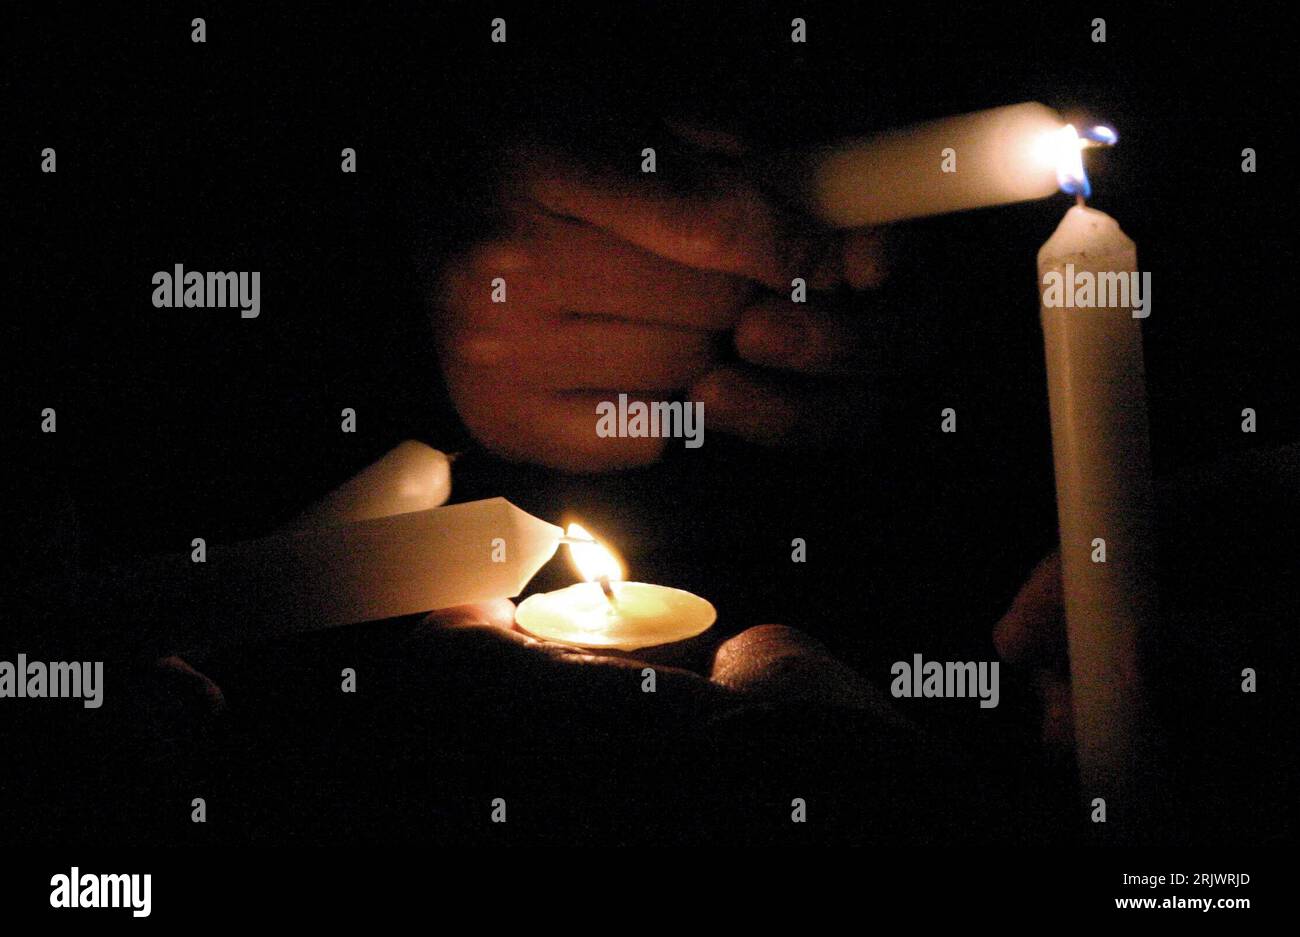 Bildnummer: 52056628  Datum: 17.08.2007  Copyright: imago/Xinhua Peruaner zündet eine Kerze in Gedenken an die Opfer des verheerenden Erdbebens in Valparaiso in Peru - PUBLICATIONxNOTxINxCHN , Objekte , Körperteile; 2007, Kerze, Kerzen, Kerzenlicht, Licht, Trauerfeier, Erdbeben, Erdbebenopfer, Katastrophe, Naturkatastrophe; , quer, Kbdig, Einzelbild, Peru,  , Stock Photo